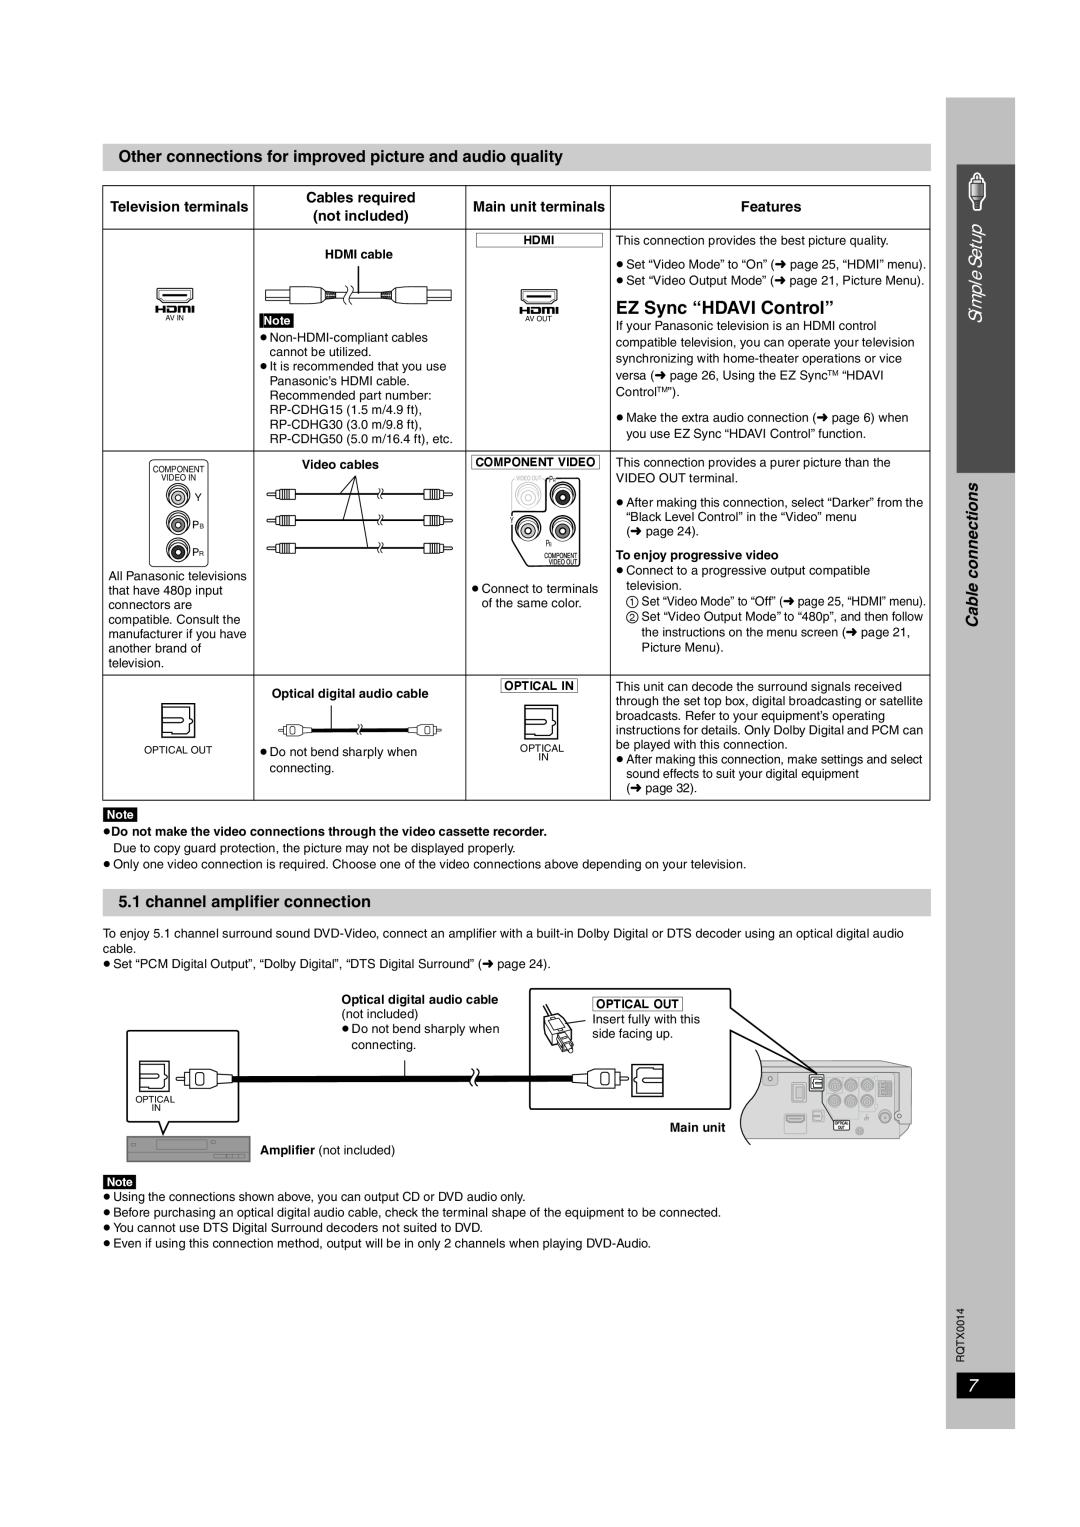 Panasonic SC-PTX5 EZ Sync “HDAVI Control”, Simple Setup, channel amplifier connection, Cable connections, Component\Video 